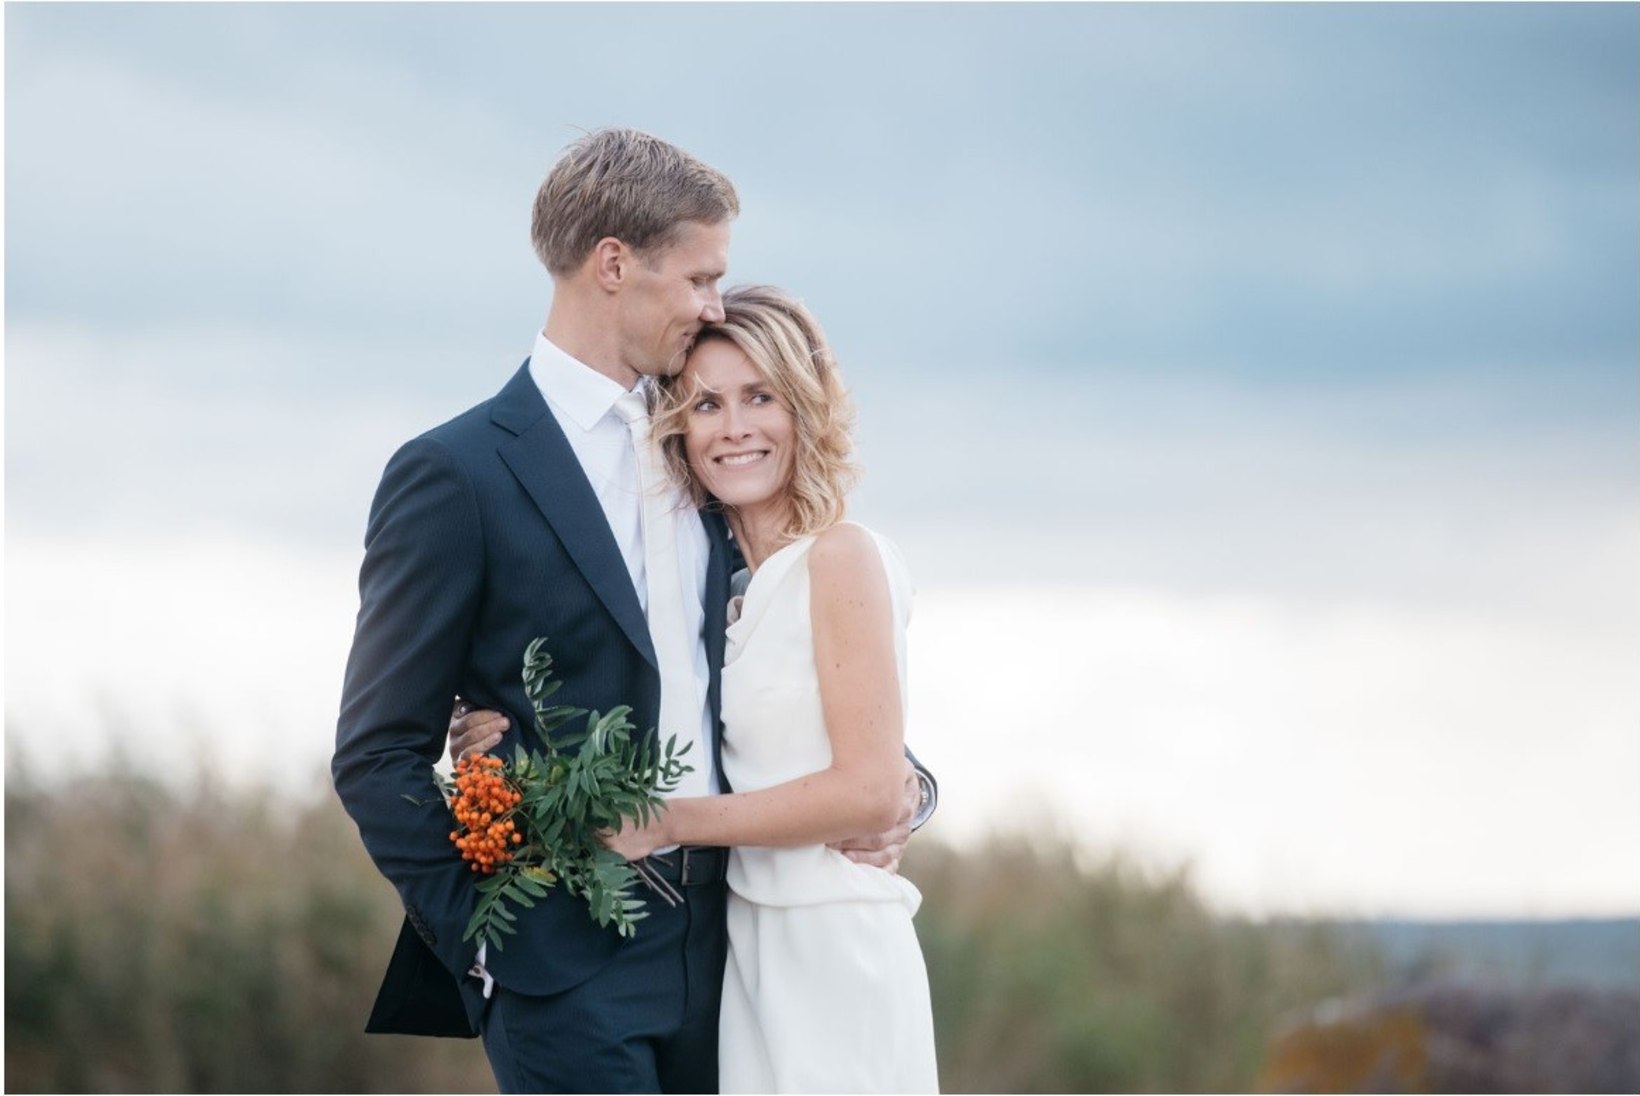 FOTOD | Hõissa! Kaja Kallas ja Arvo Hallik abiellusid